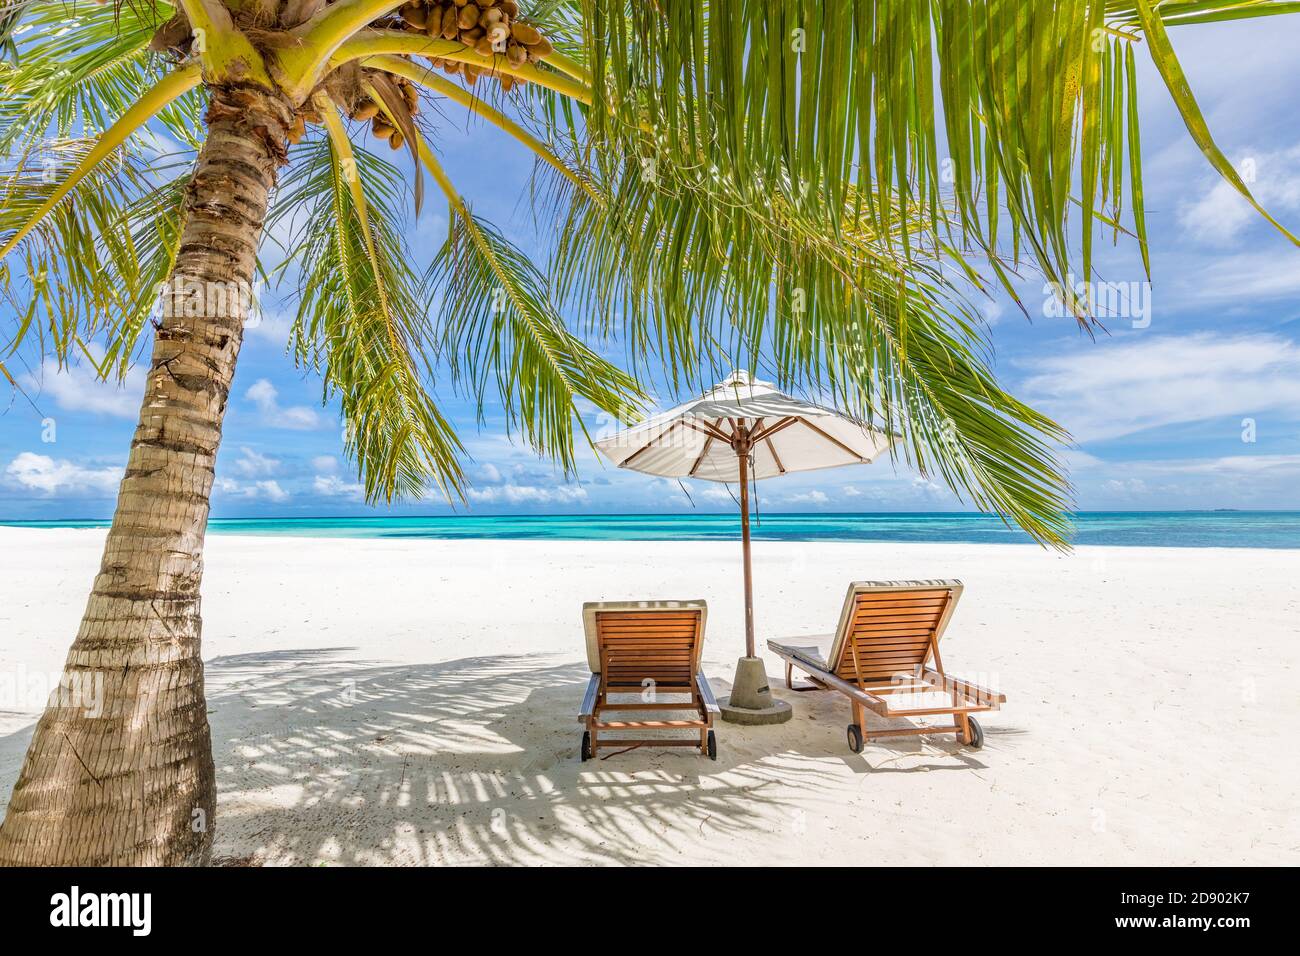 Hermosas sillas de playa con sombrilla en la playa tropical de arena blanca